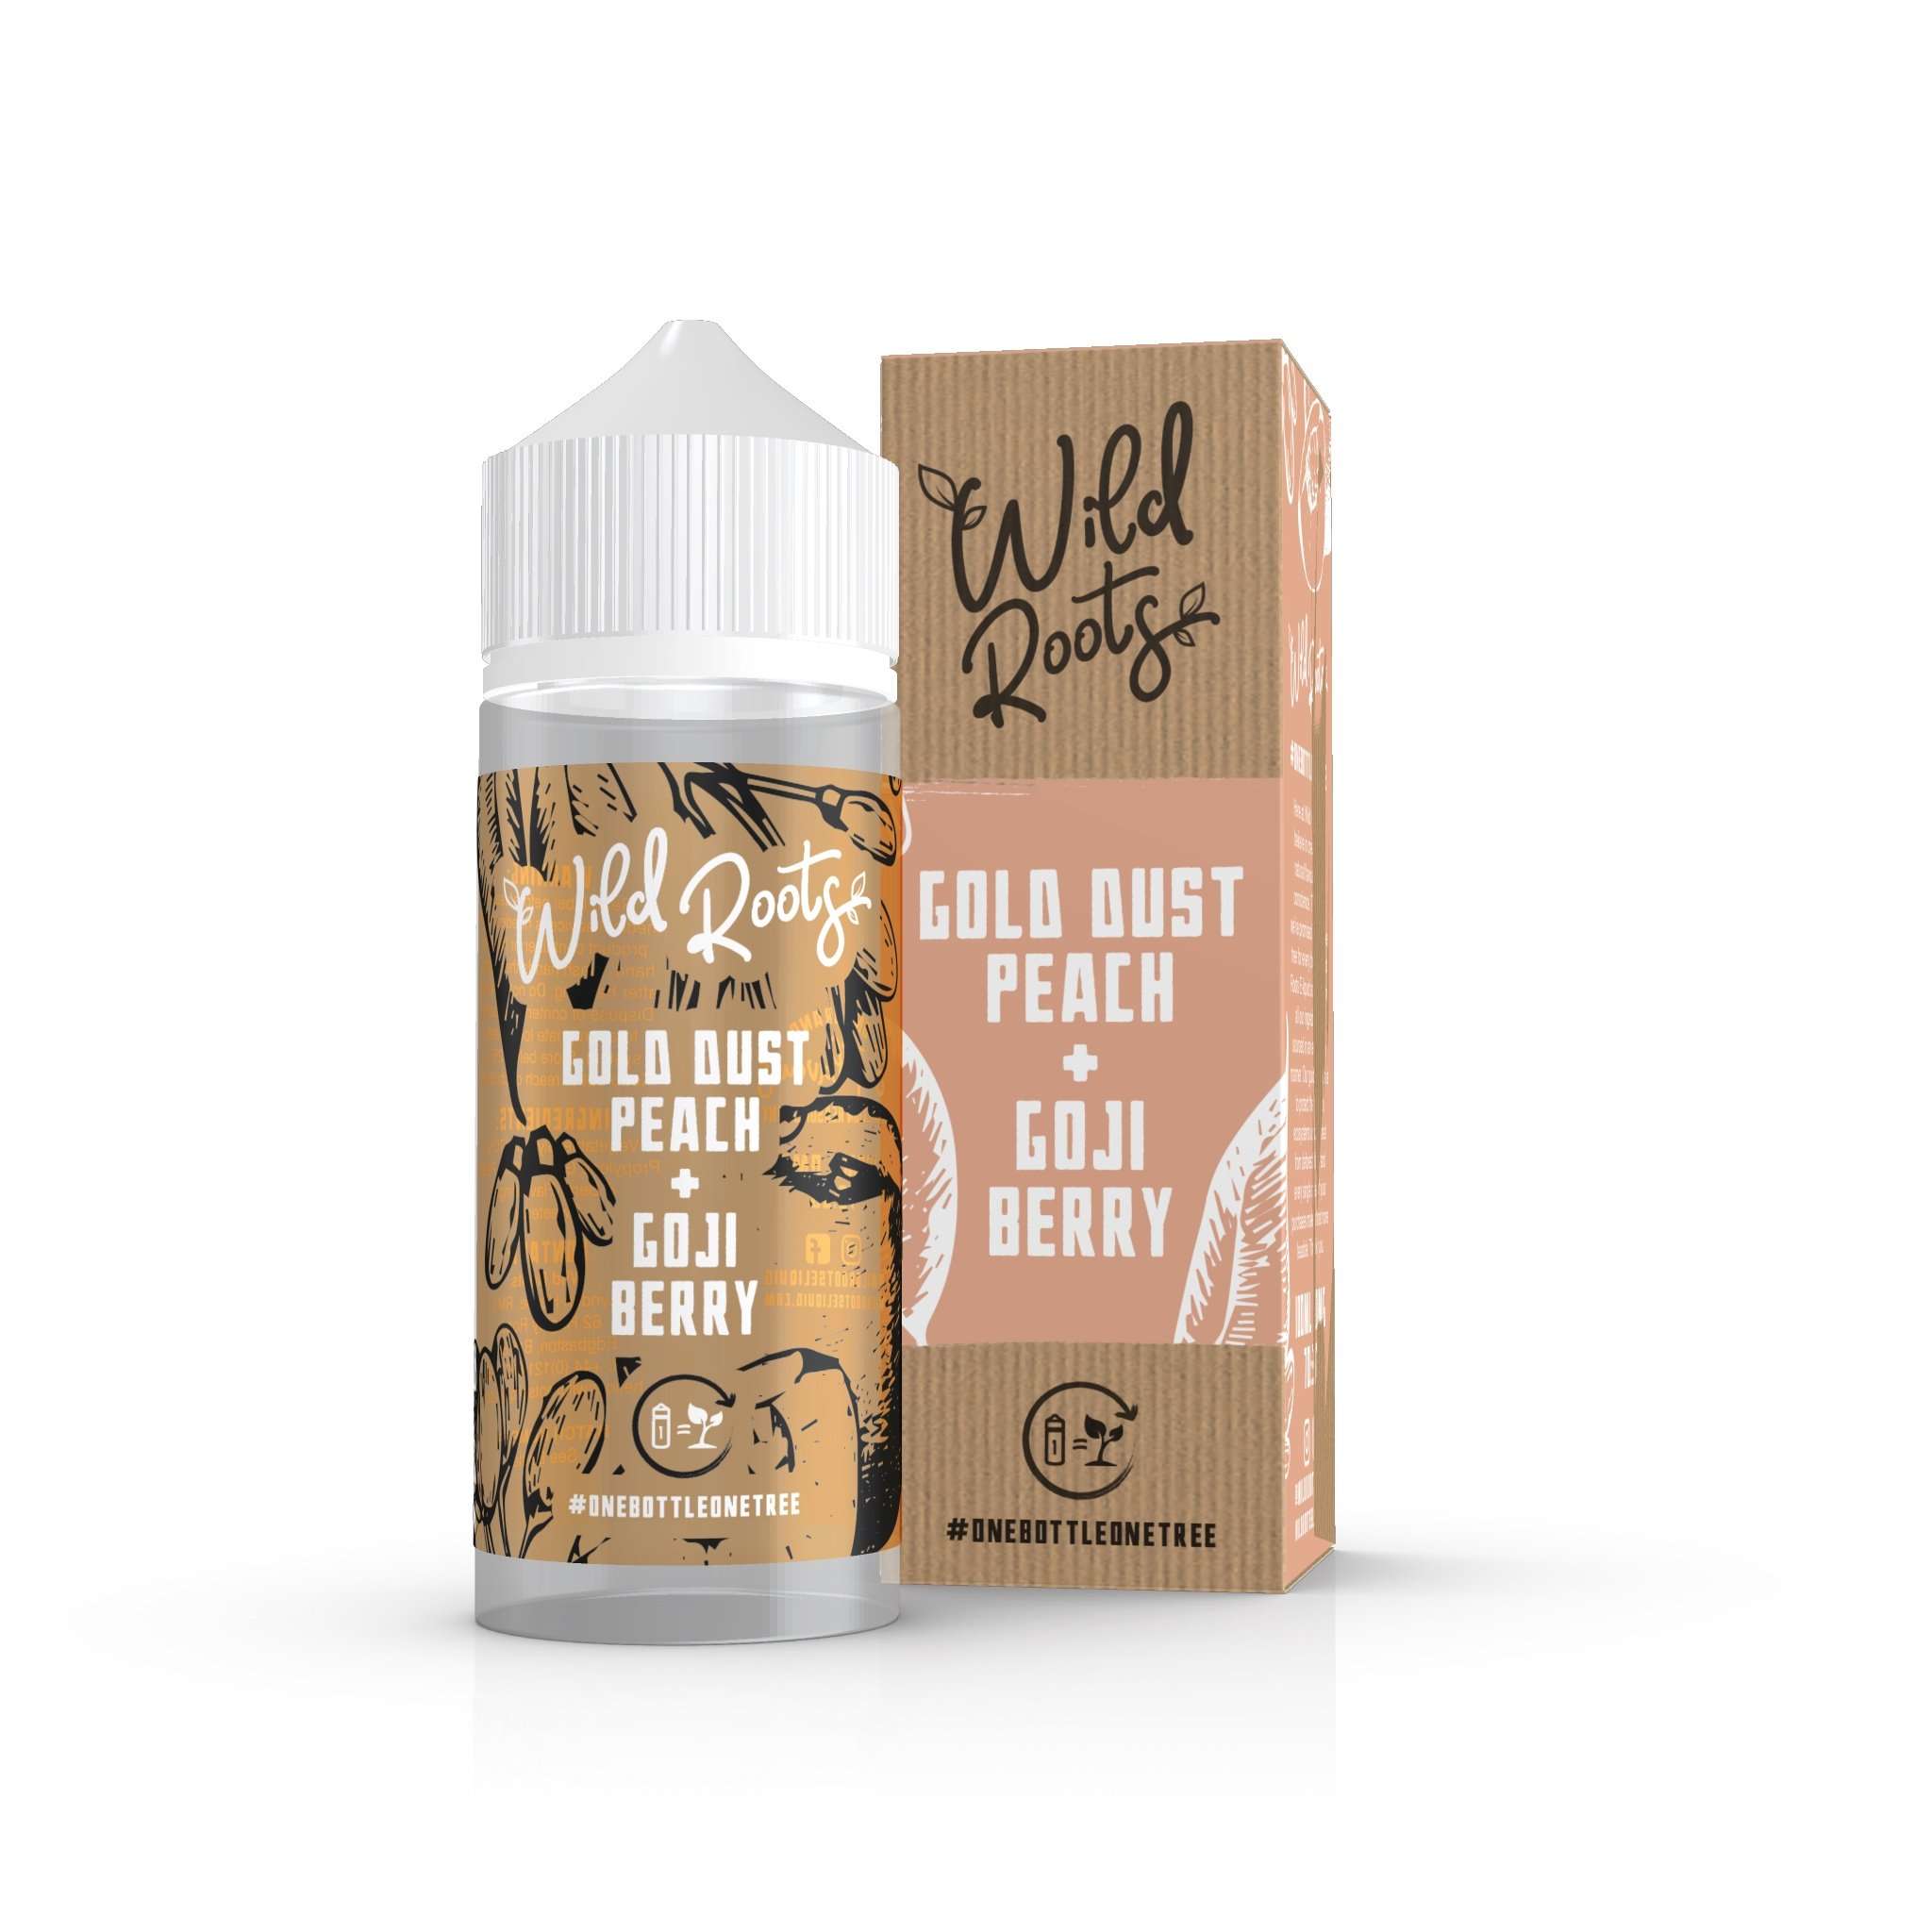  Wild Roots E Liquid - Gold Dust Peach & Goji Berry - 100ml 